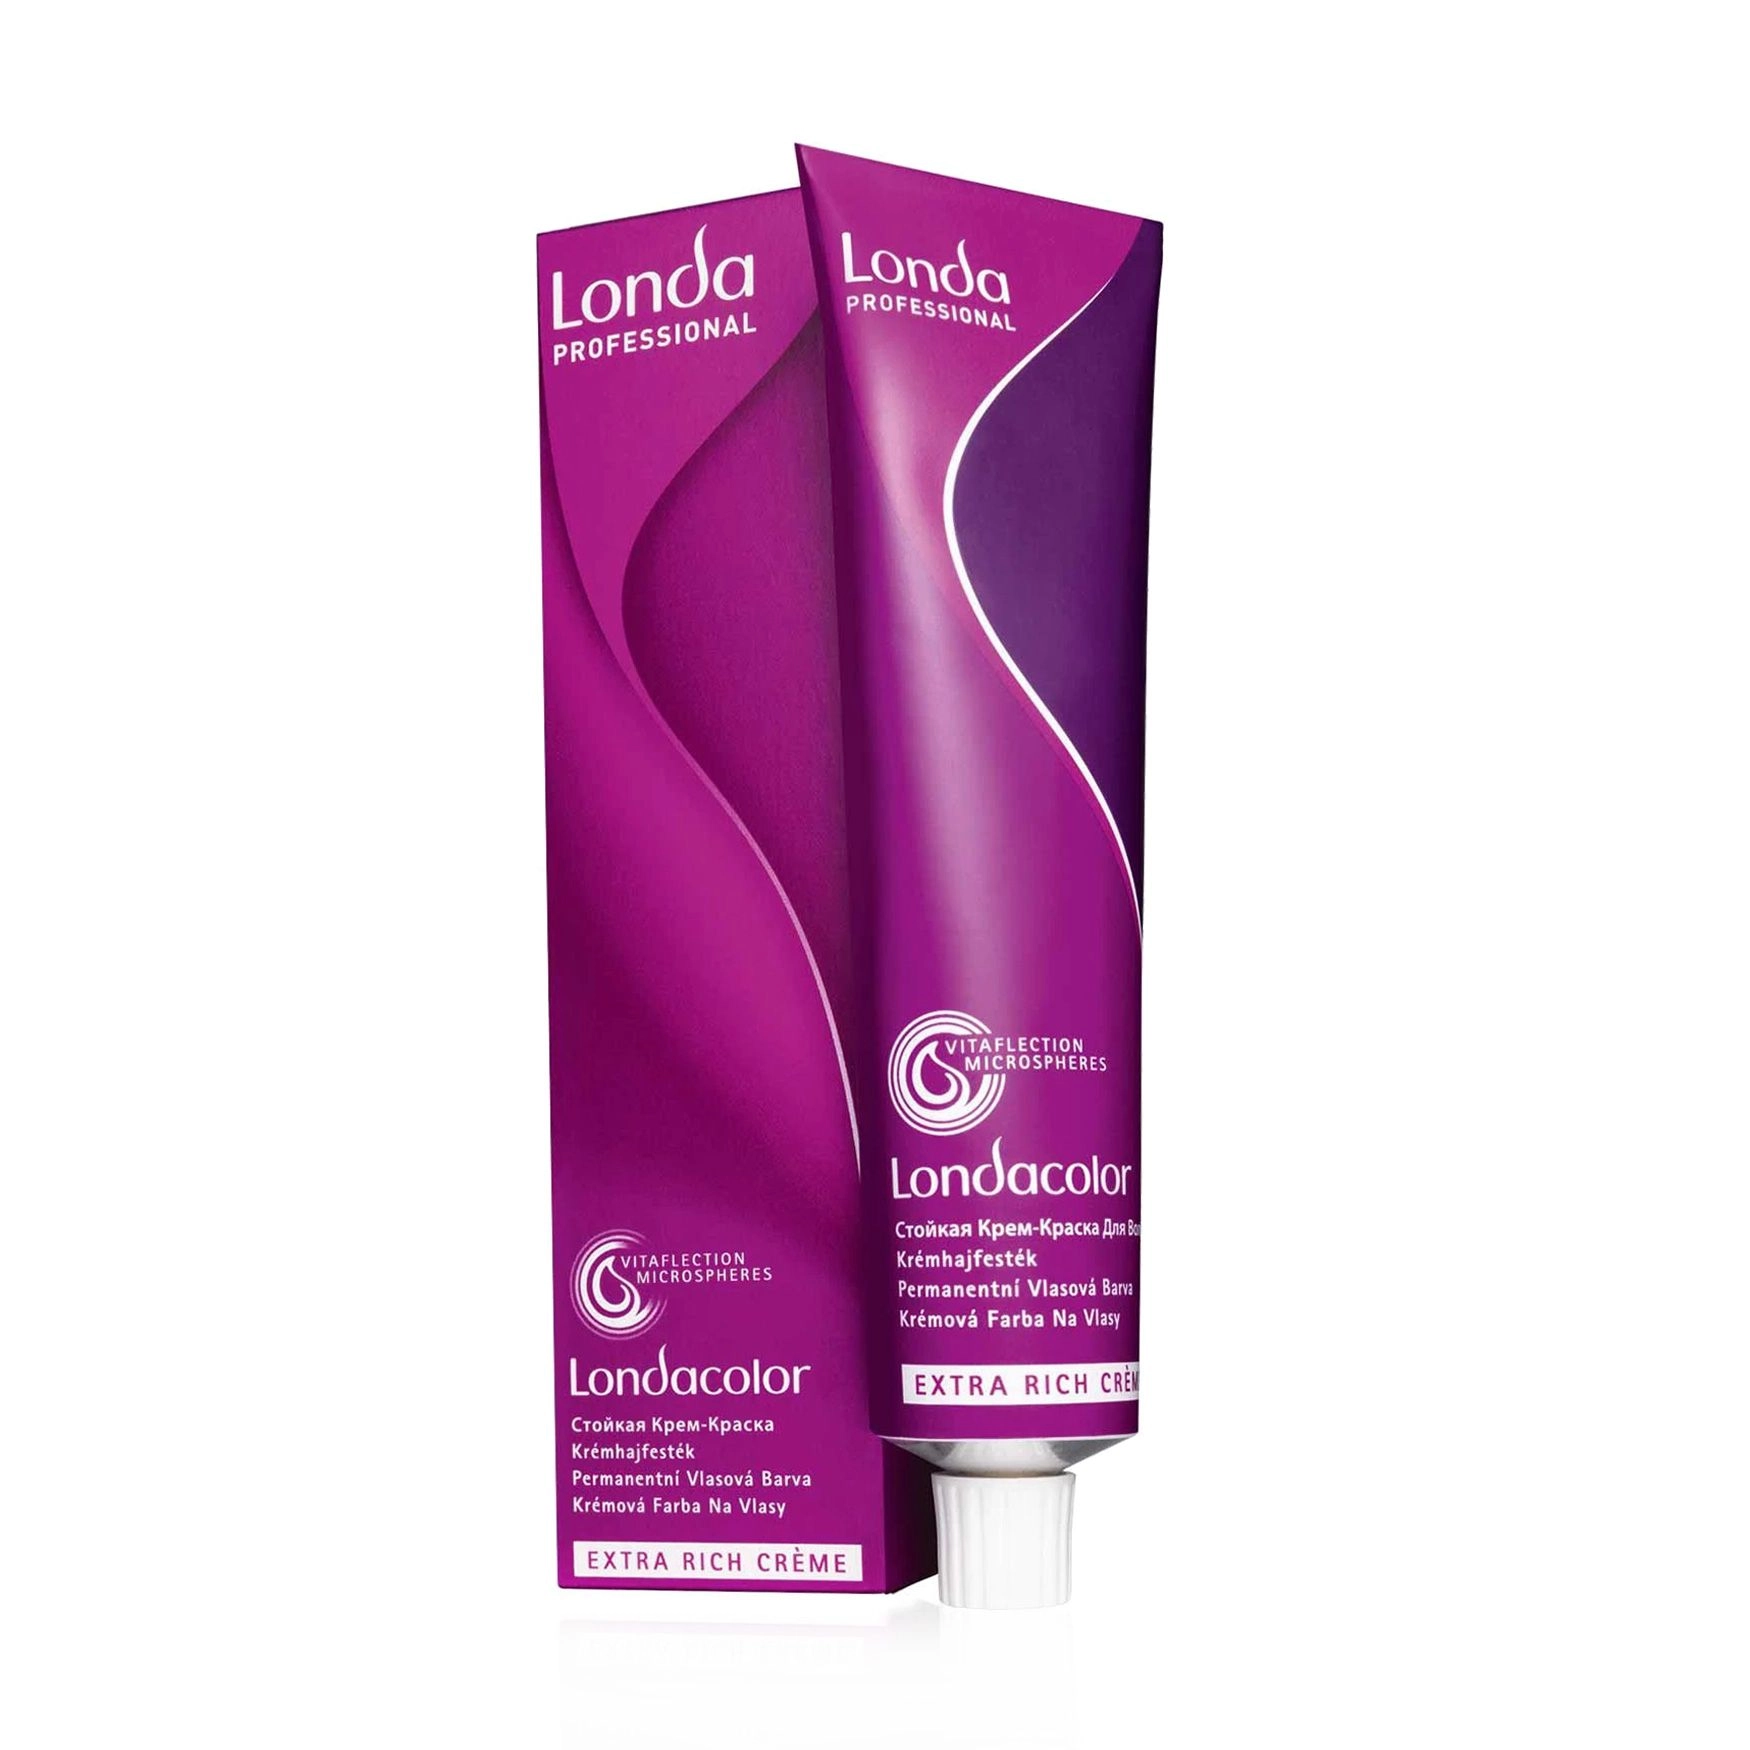 Londa Professional Стойкая крем-краска для волос Londacolor Extra Rich Creme 8/96 Светлый блонд сандрэ фиолетовый, 60 мл - фото N1